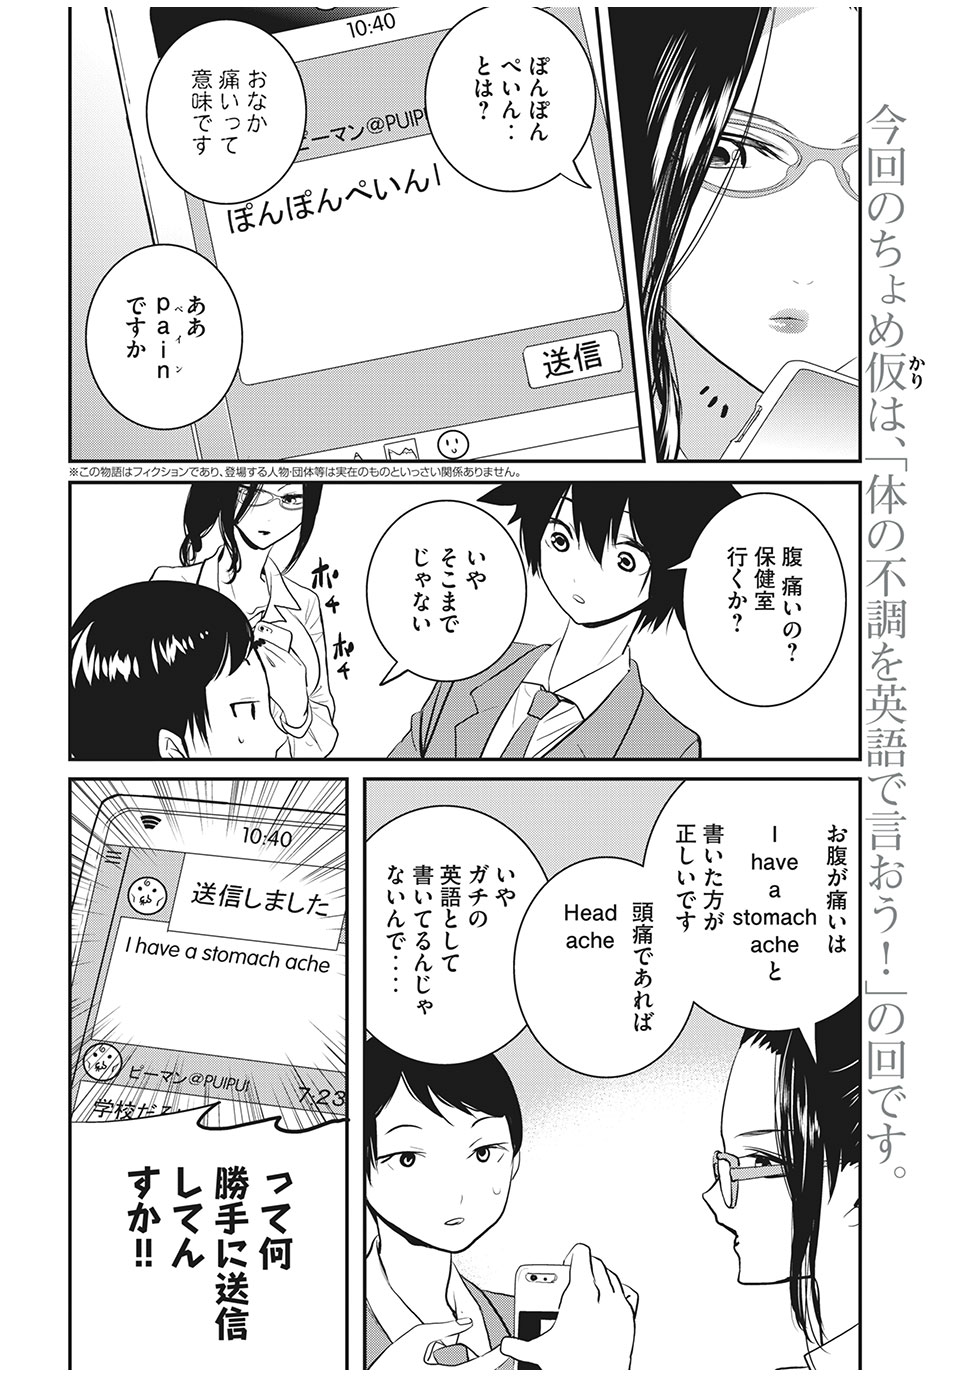 Eigo ×× Sensei - Chapter 16 - Page 2